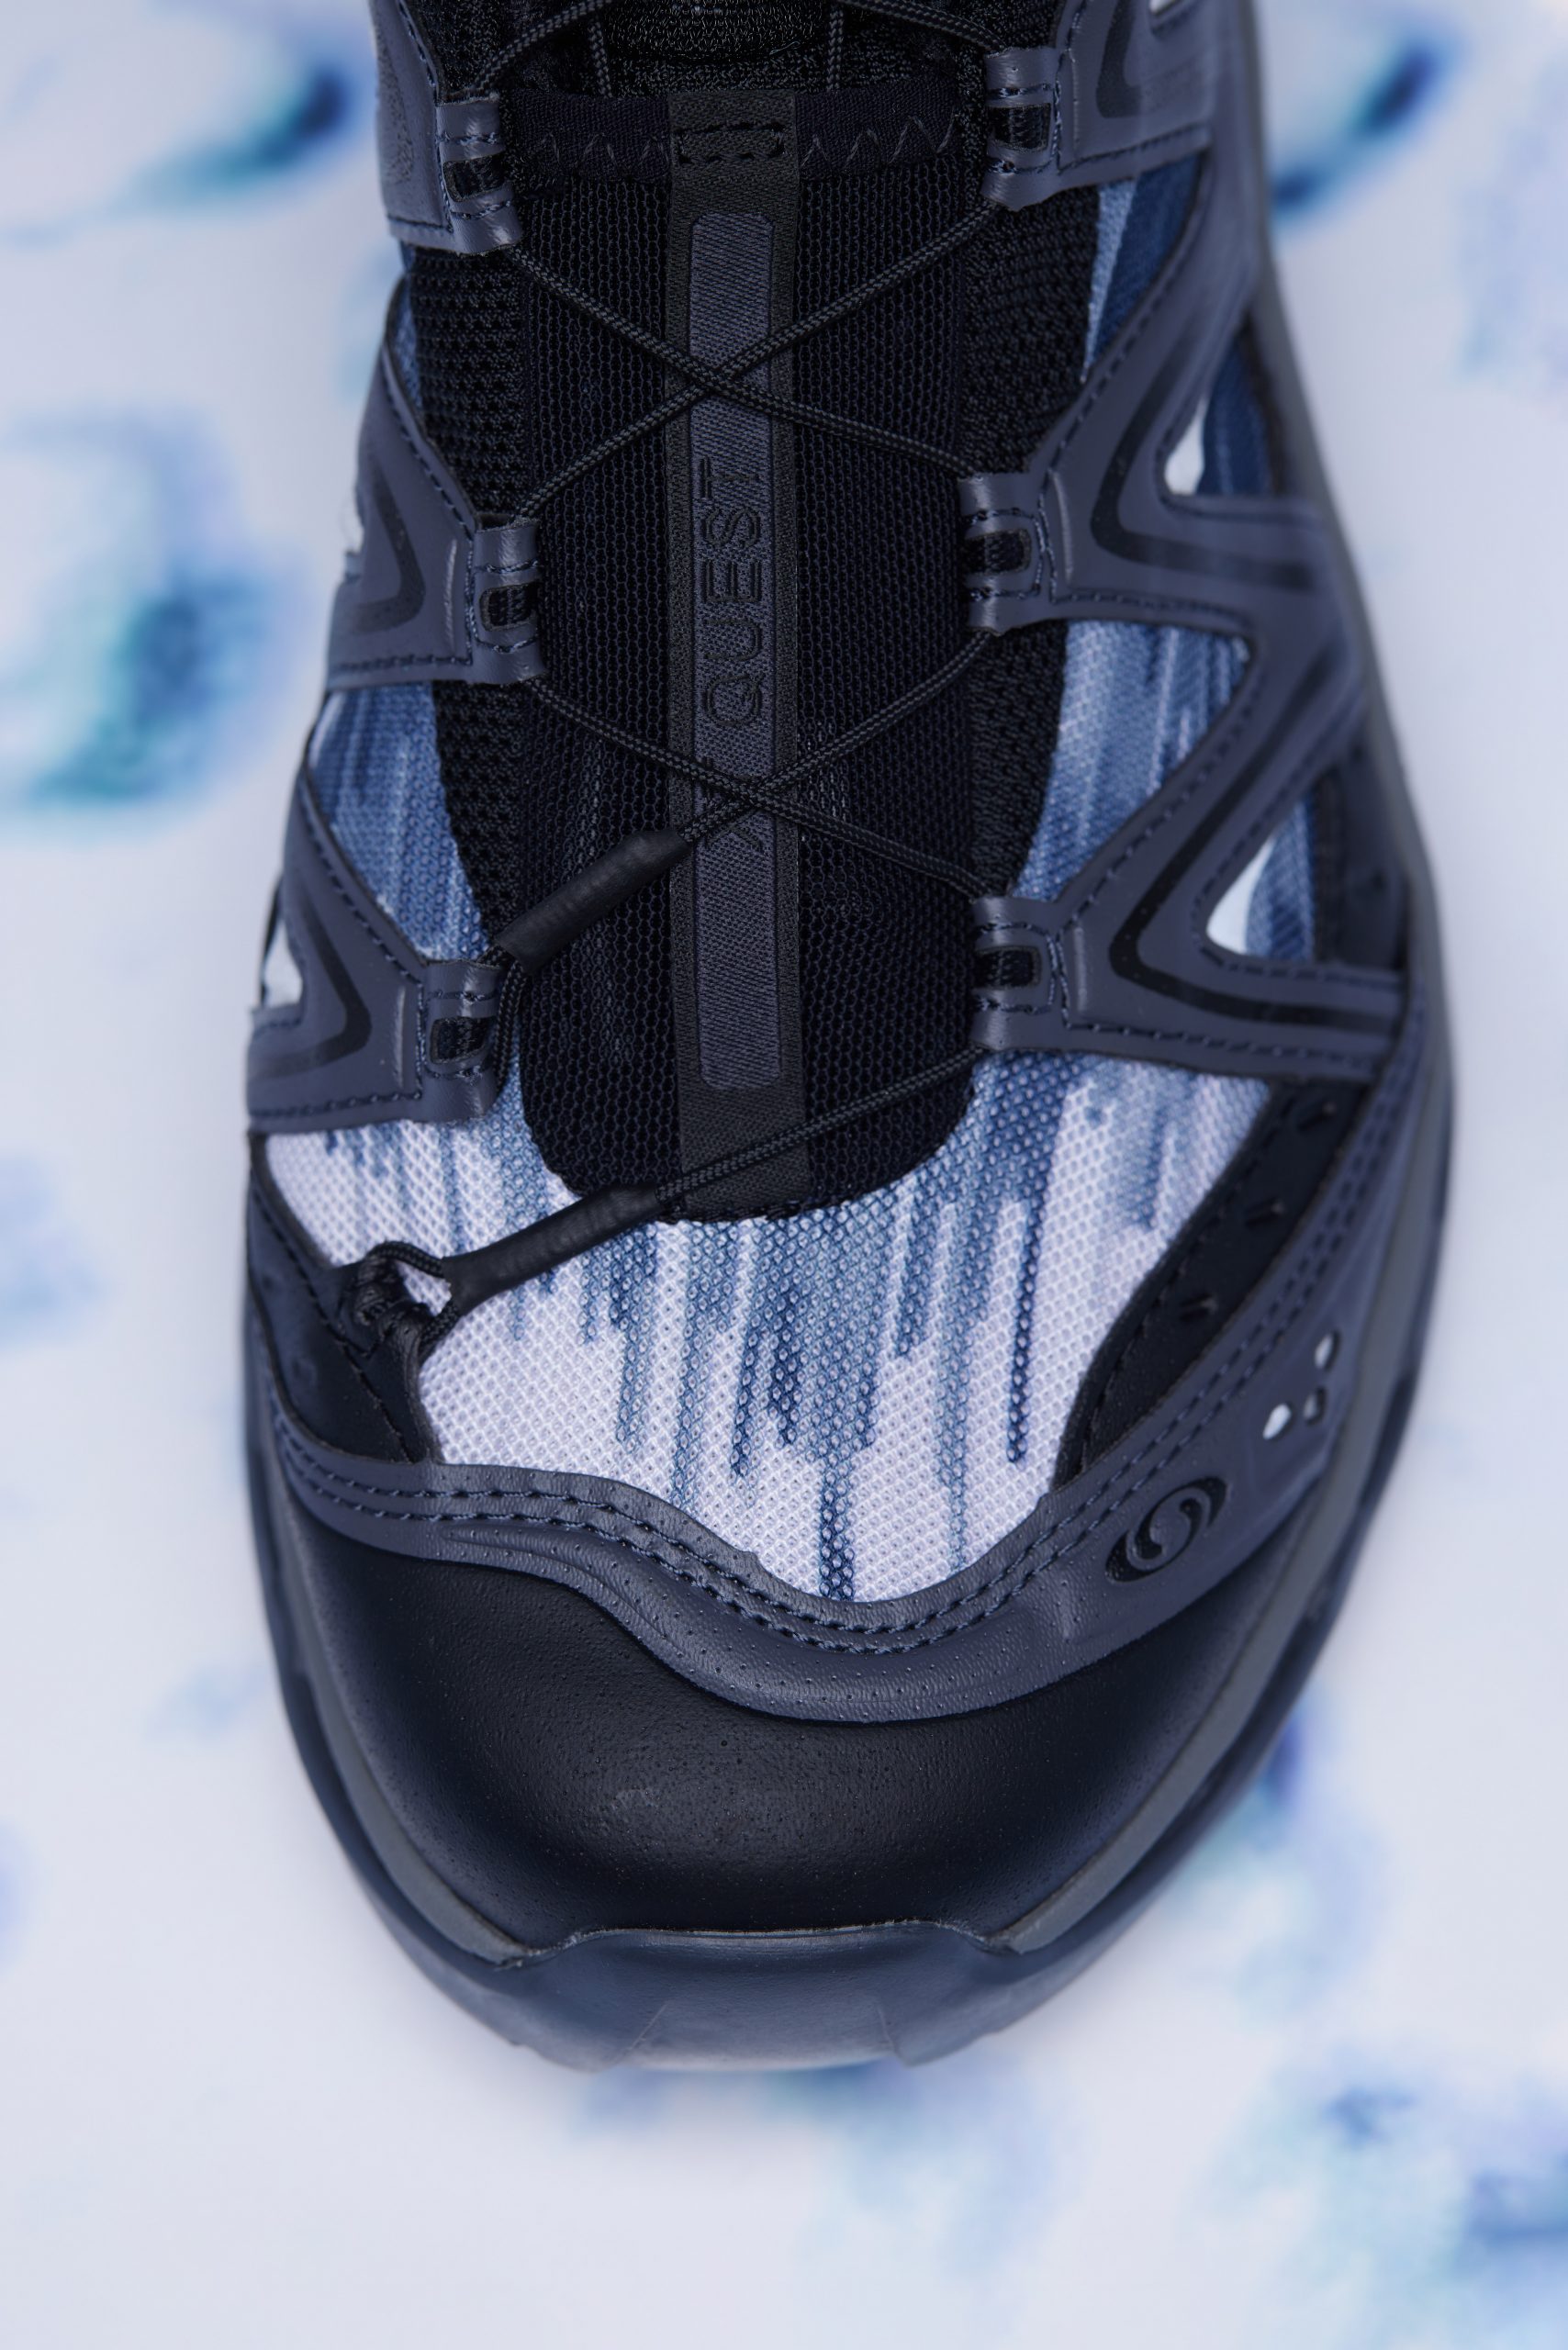 Salomon「唤山者」系列发布压轴鞋款XT-QUEST「括苍山」-Supreme情报网